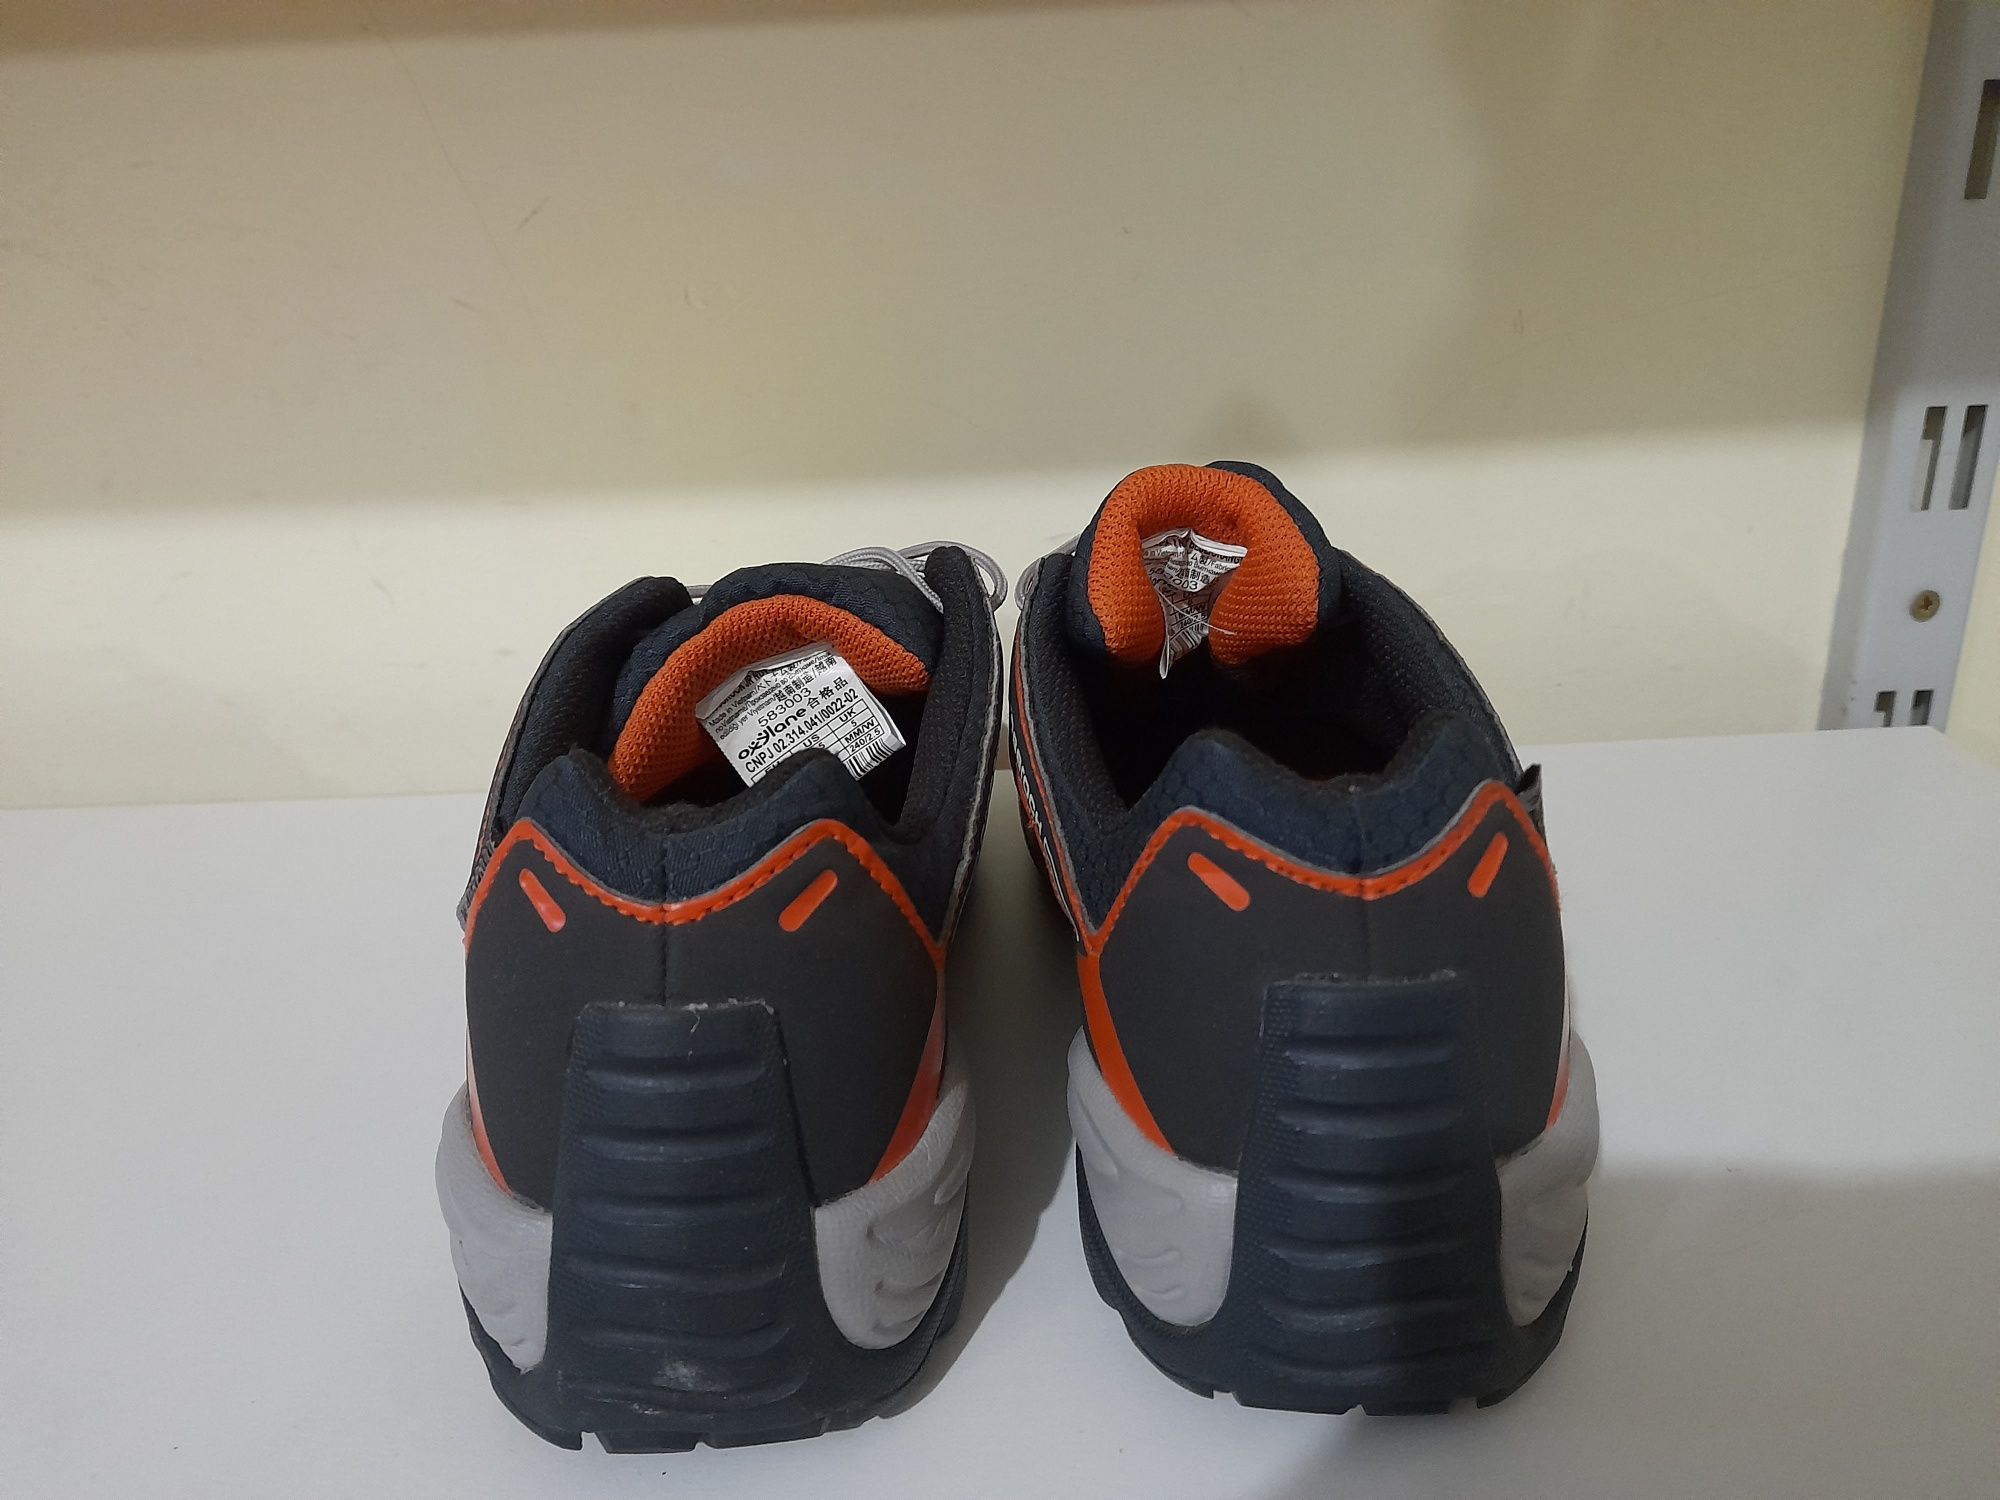 QUECHUAQ Crossrock трекинговые кроссовки водонепроницаемые, 38( 24 см)